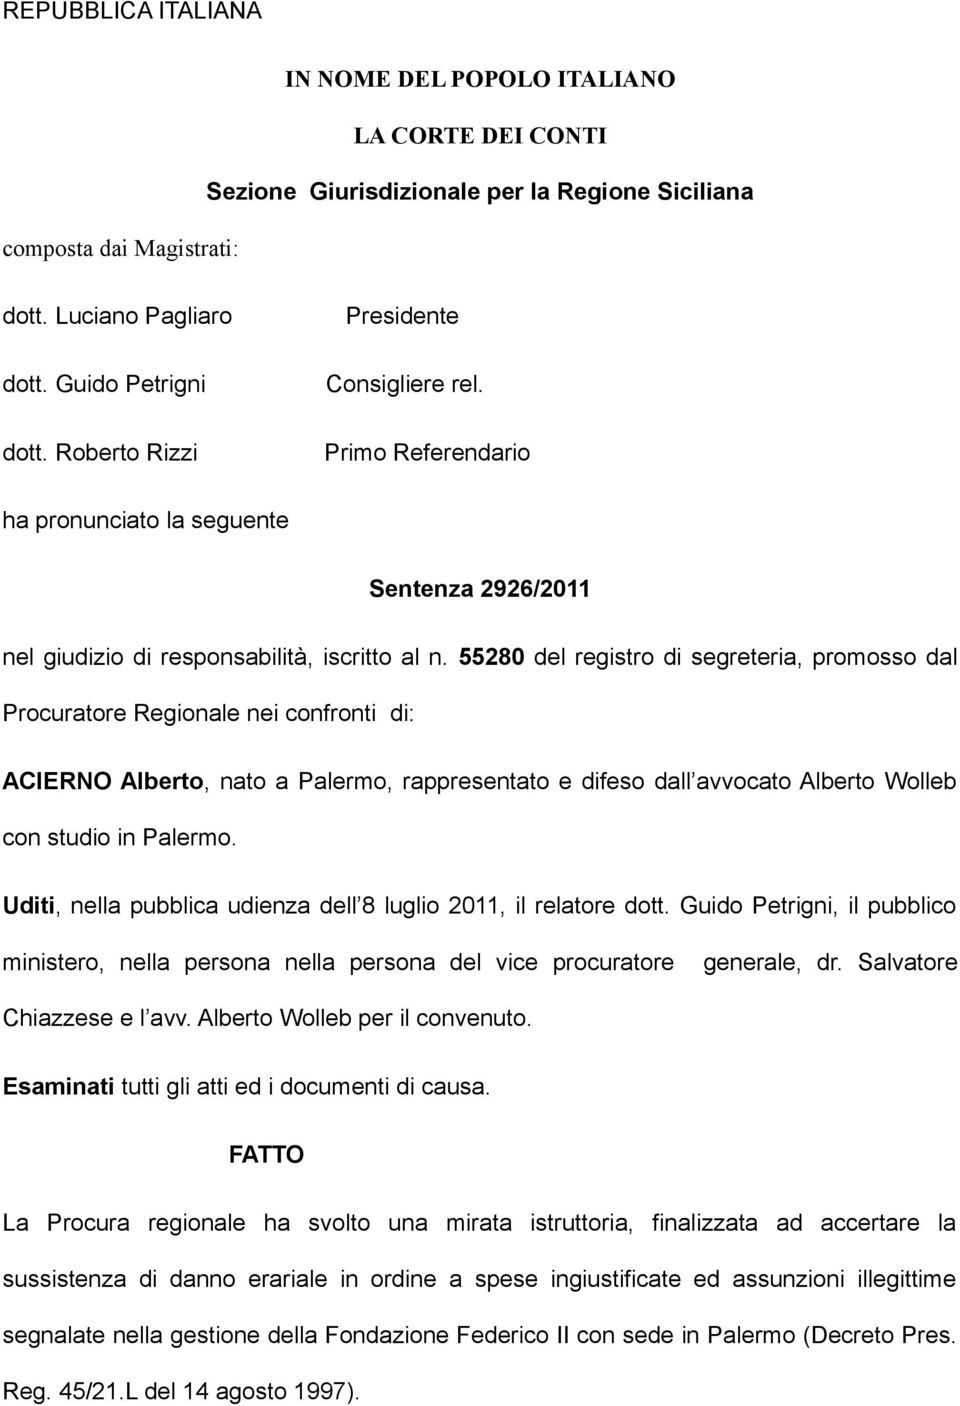 55280 del registro di segreteria, promosso dal Procuratore Regionale nei confronti di: ACIERNO Alberto, nato a Palermo, rappresentato e difeso dall avvocato Alberto Wolleb con studio in Palermo.